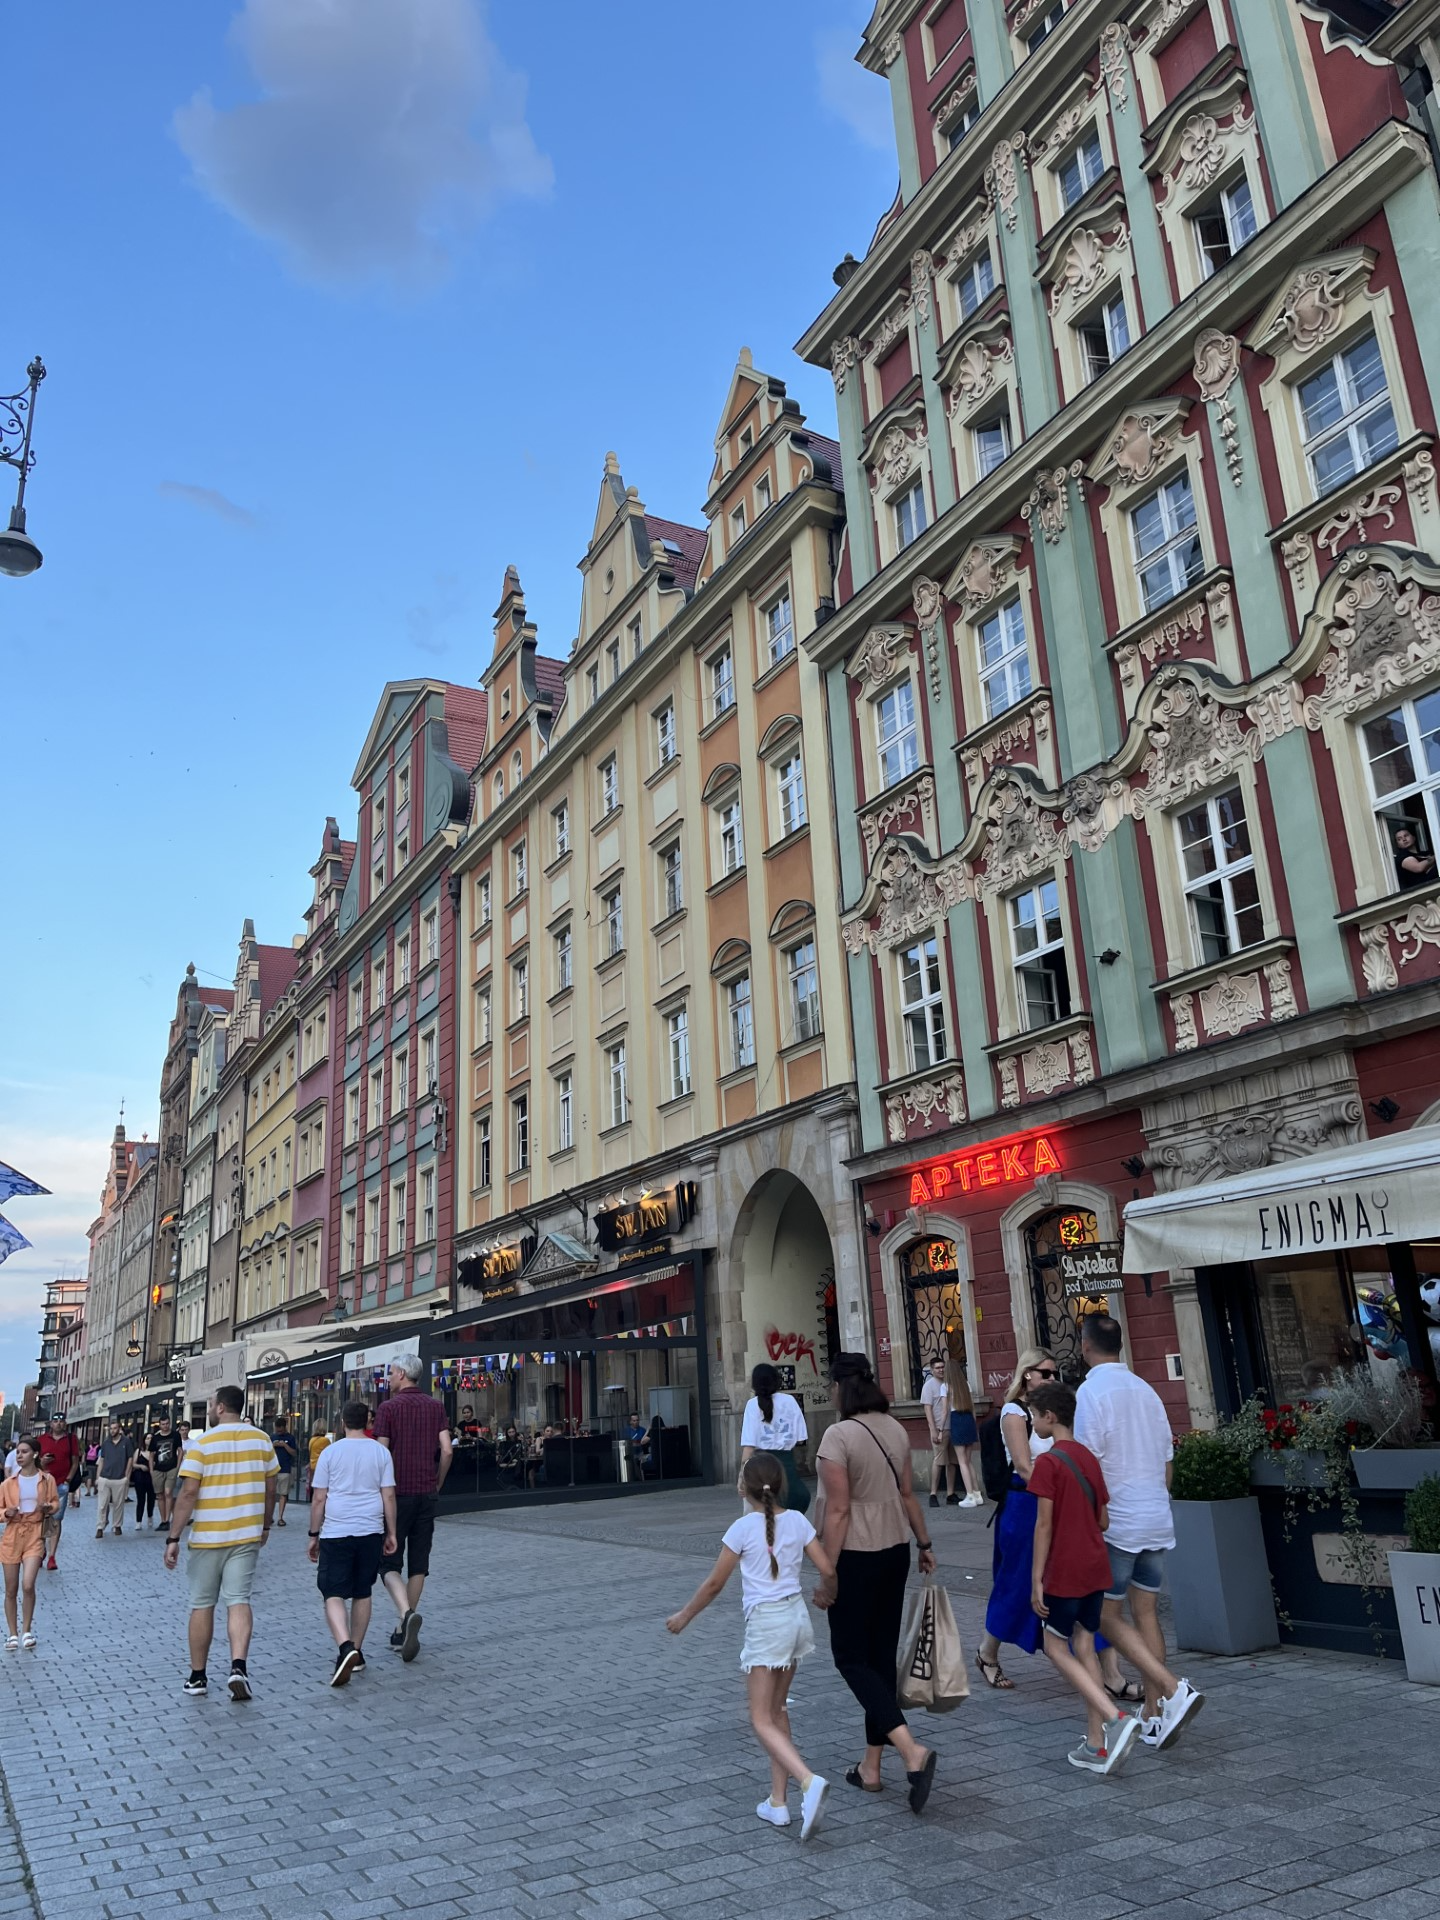 Downtown (Rynek) in Wrocław, Poland